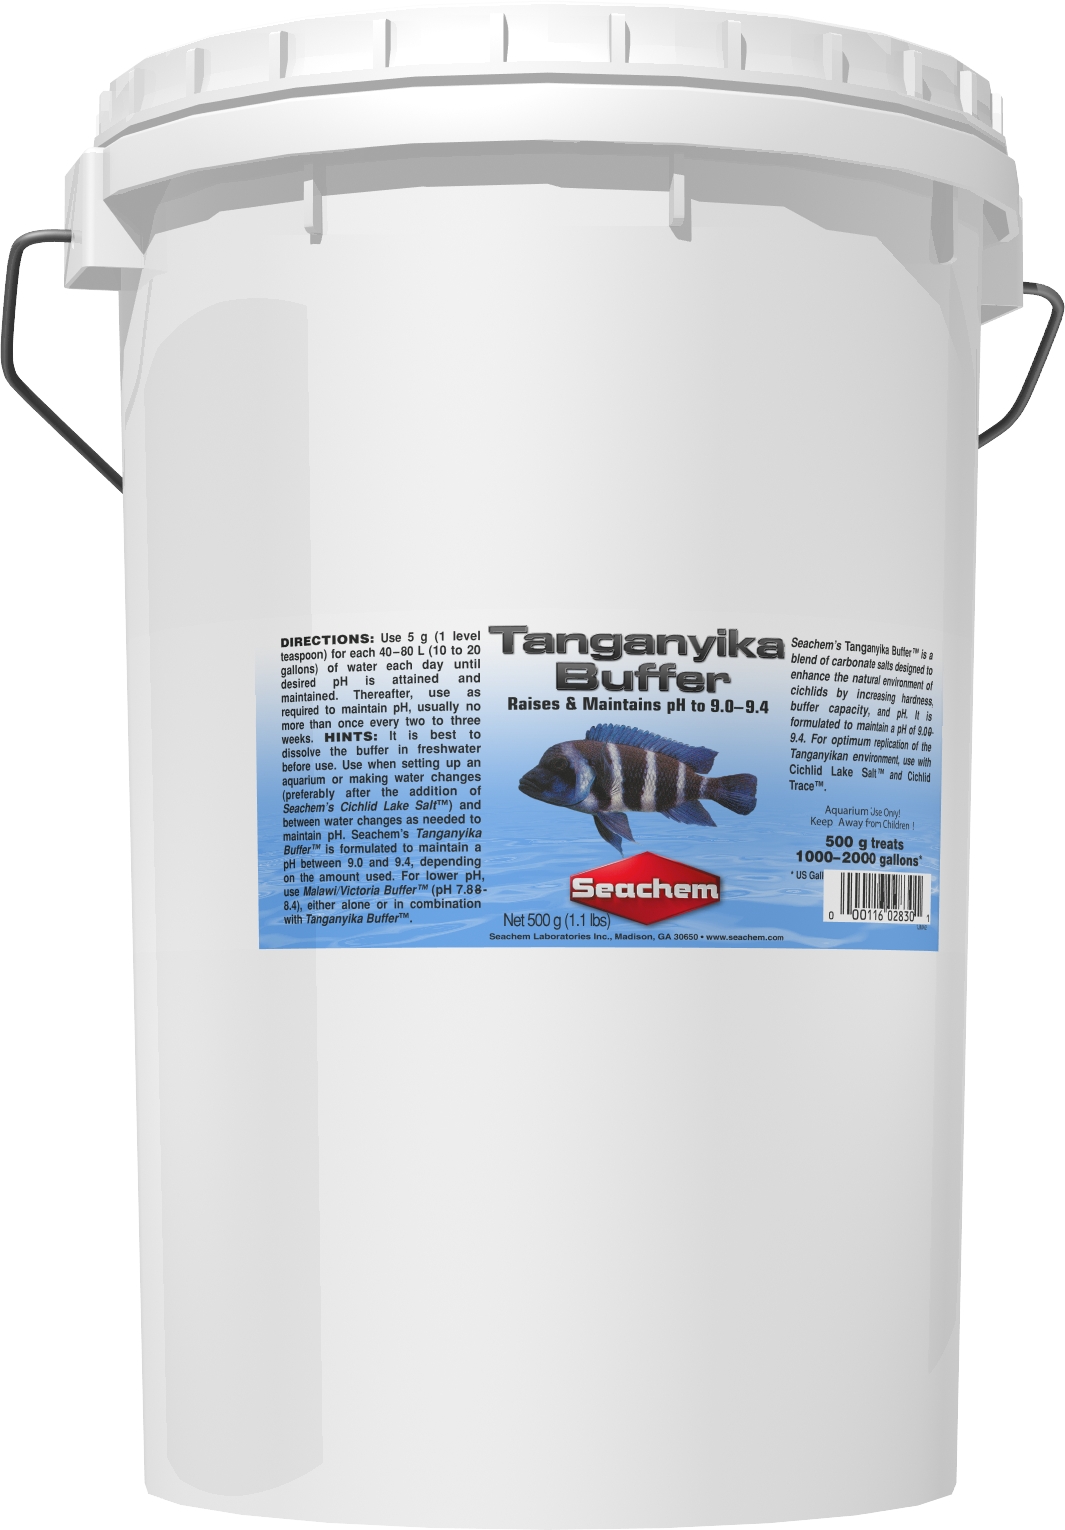 SEACHEM Tanganyika Buffer 20 Kg stabilise le pH entre 9.0 et 9.4 dans les aquariums avec cichlidés du lac Tanganyika